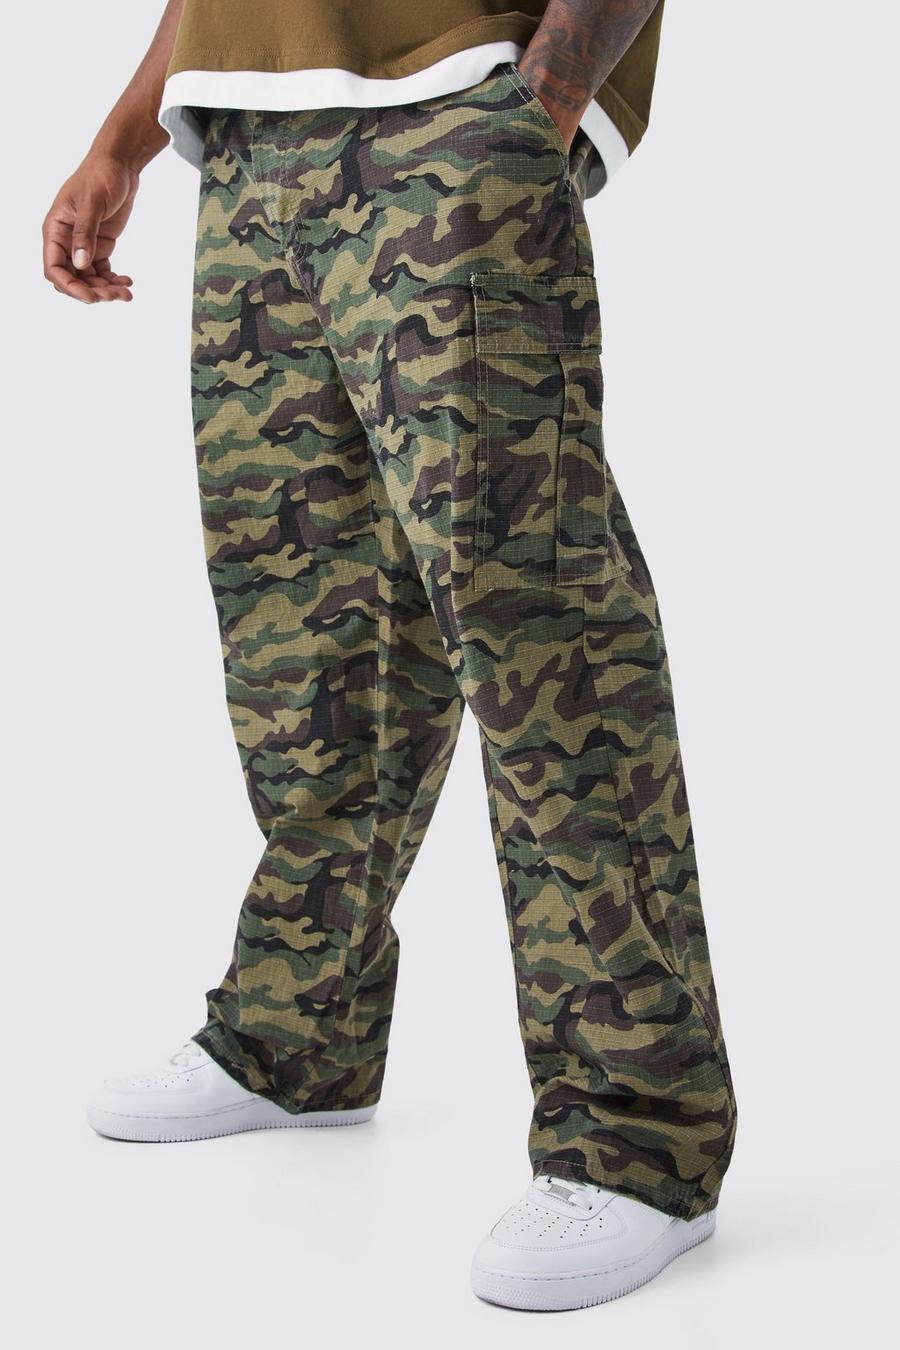 Pantaloni Cargo Plus Size rilassati in nylon ripstop in fantasia militare con laccetti sul fondo, Khaki